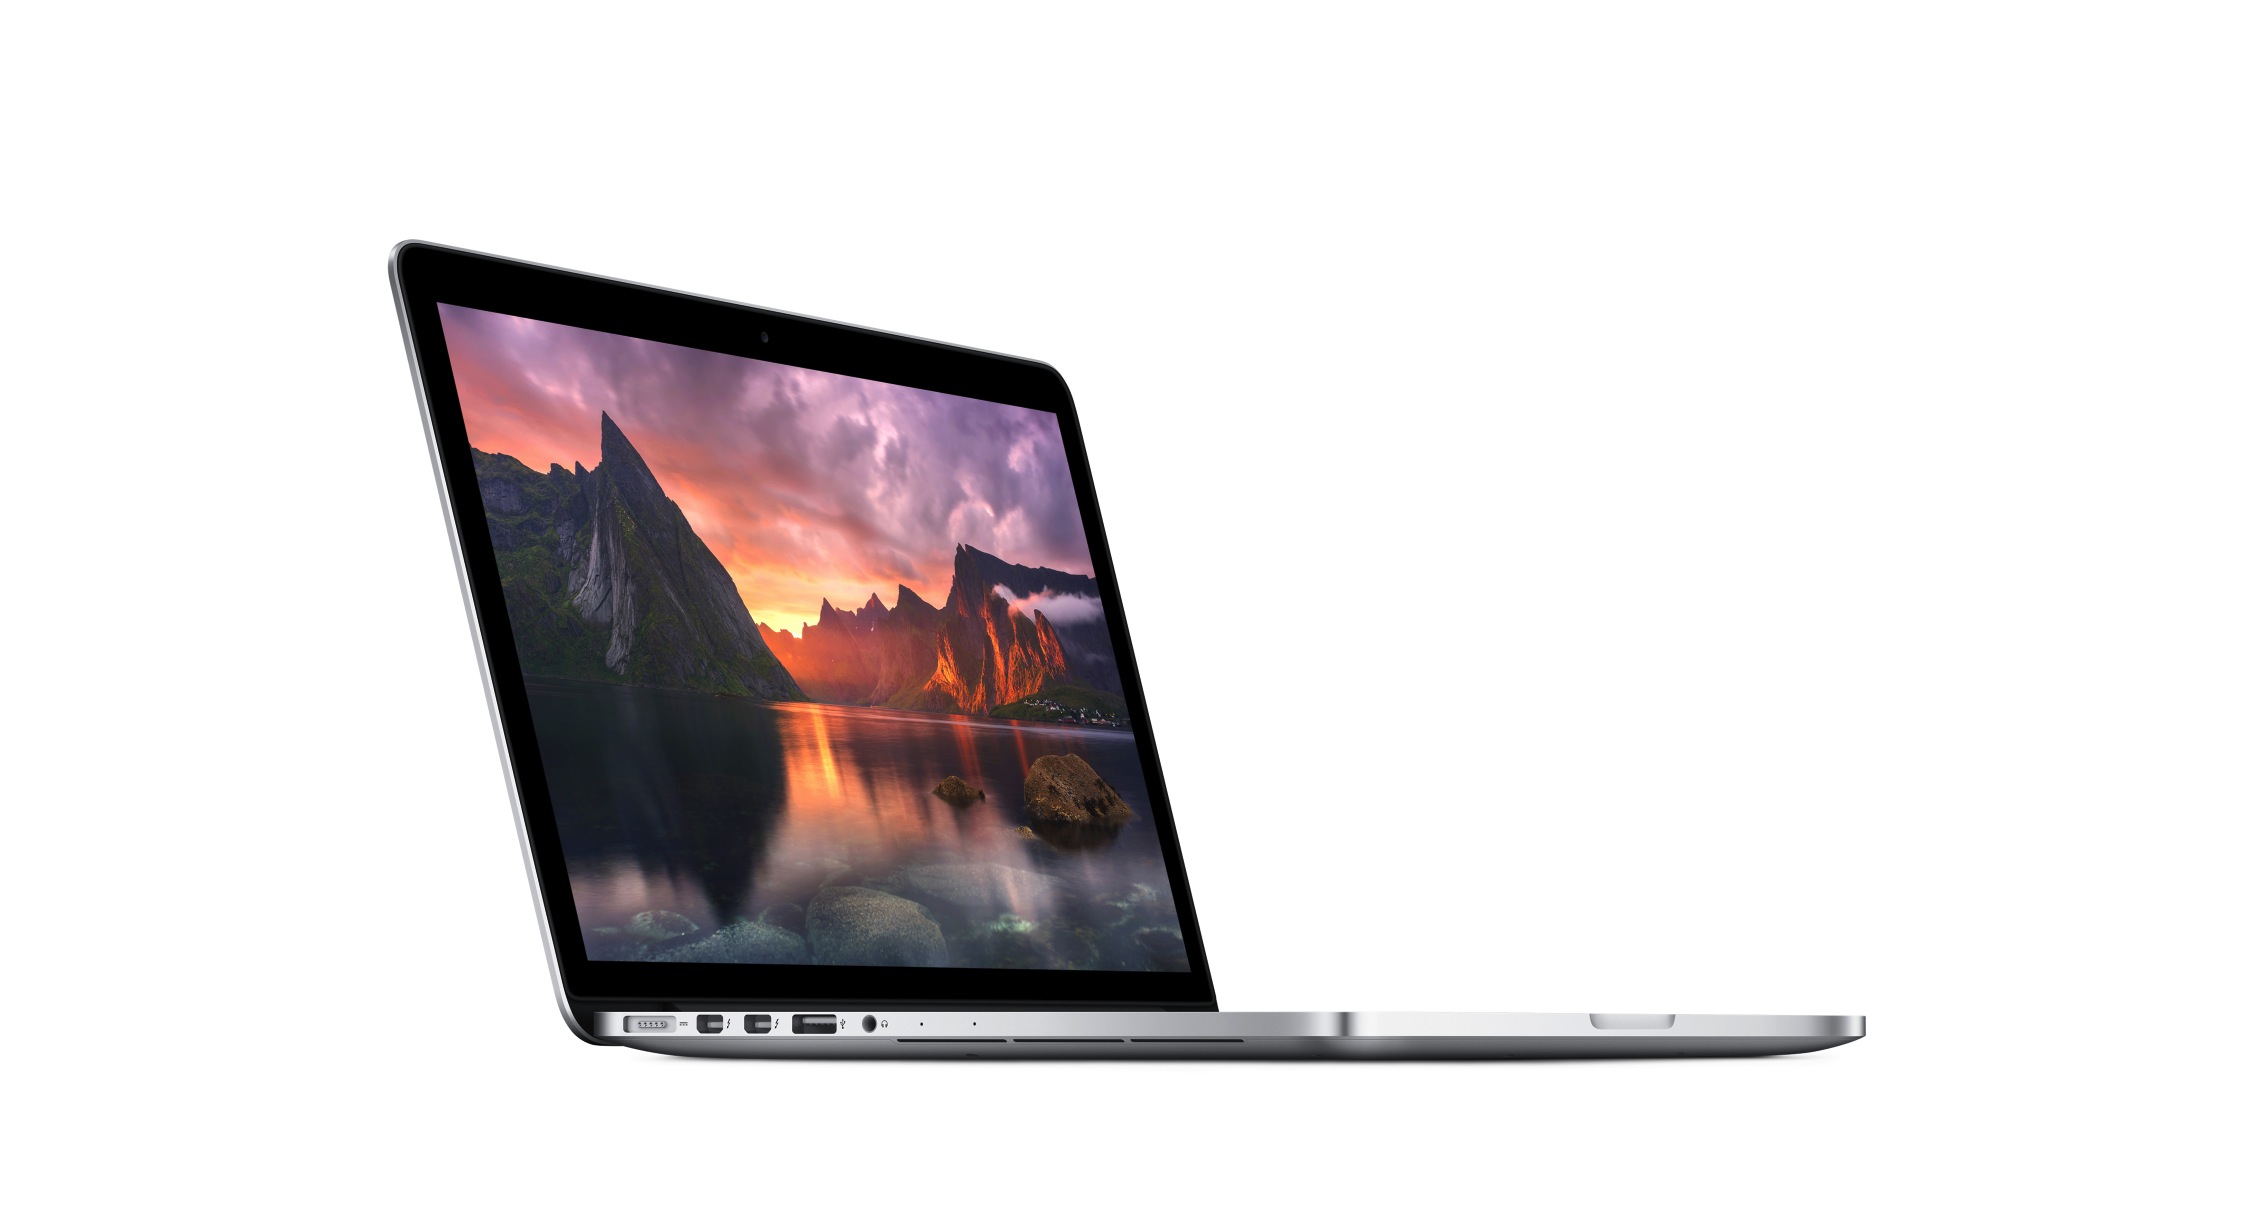 لپ تاپ - Laptop   اپل-Apple ME864-MacBook Pro -Retina- 13-inch-2013-i5-128 SSD -INTEL